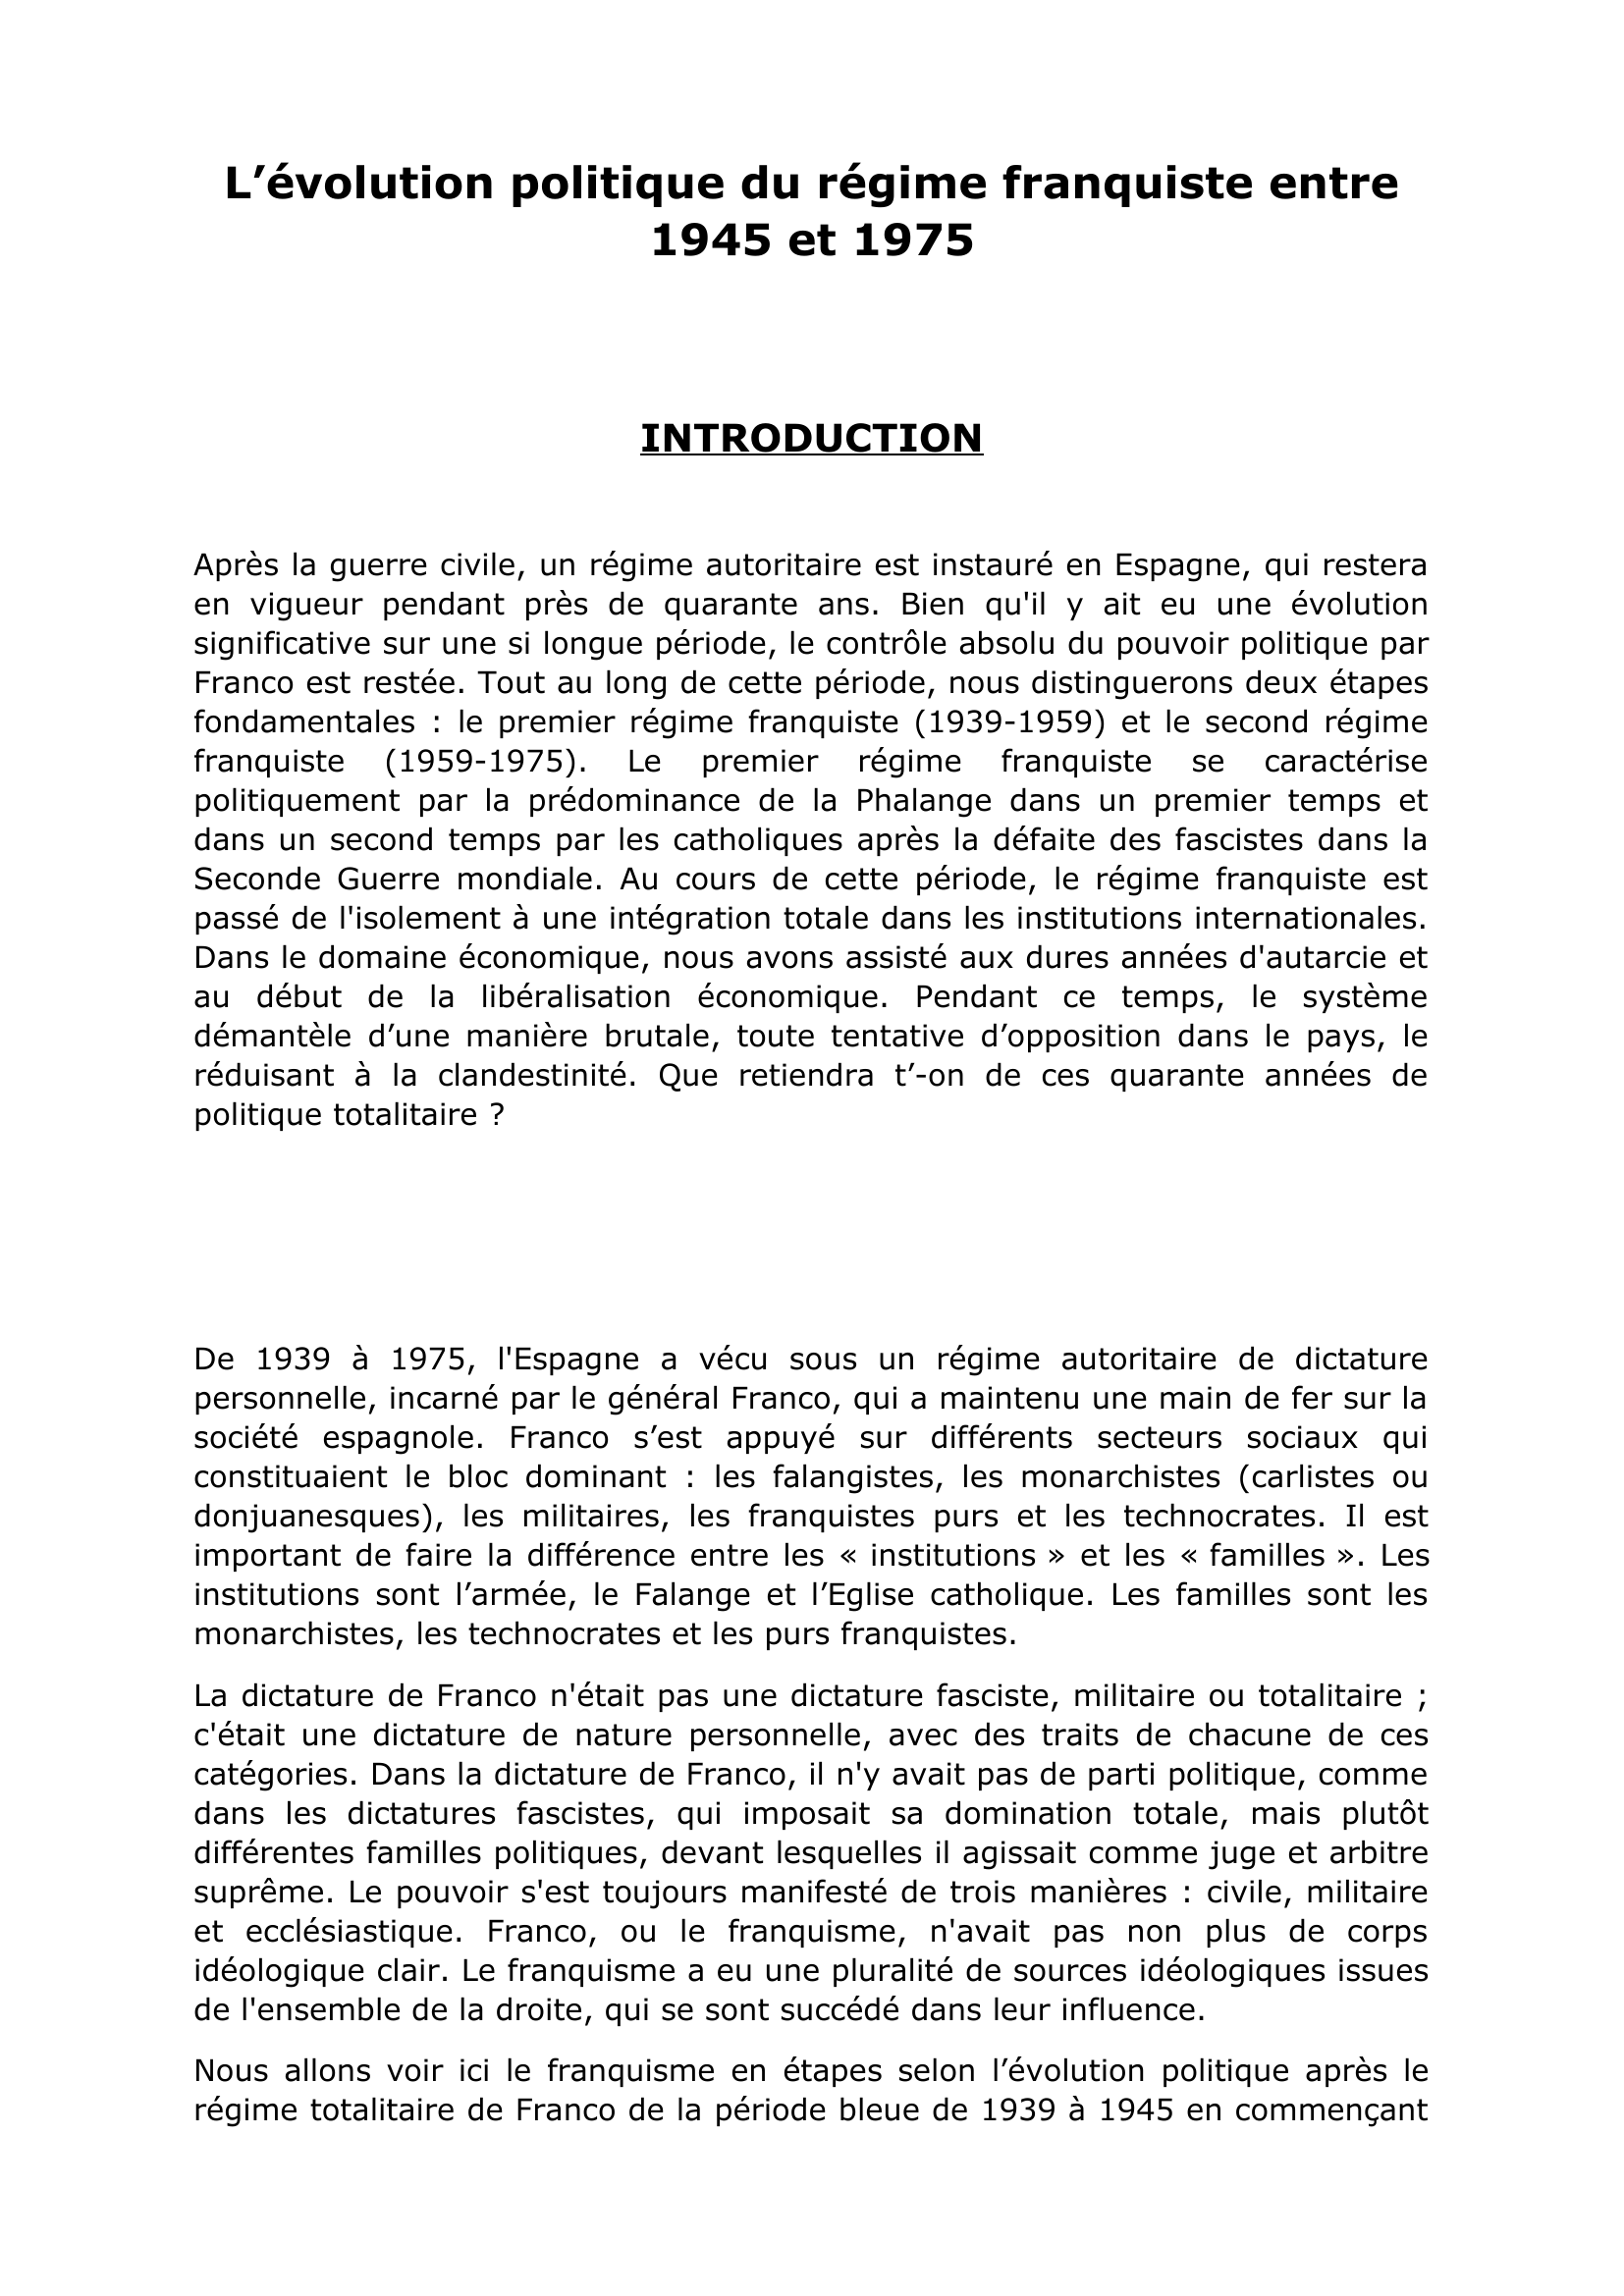 Prévisualisation du document L'évolution politique du Franquisme de 1945 à 1975